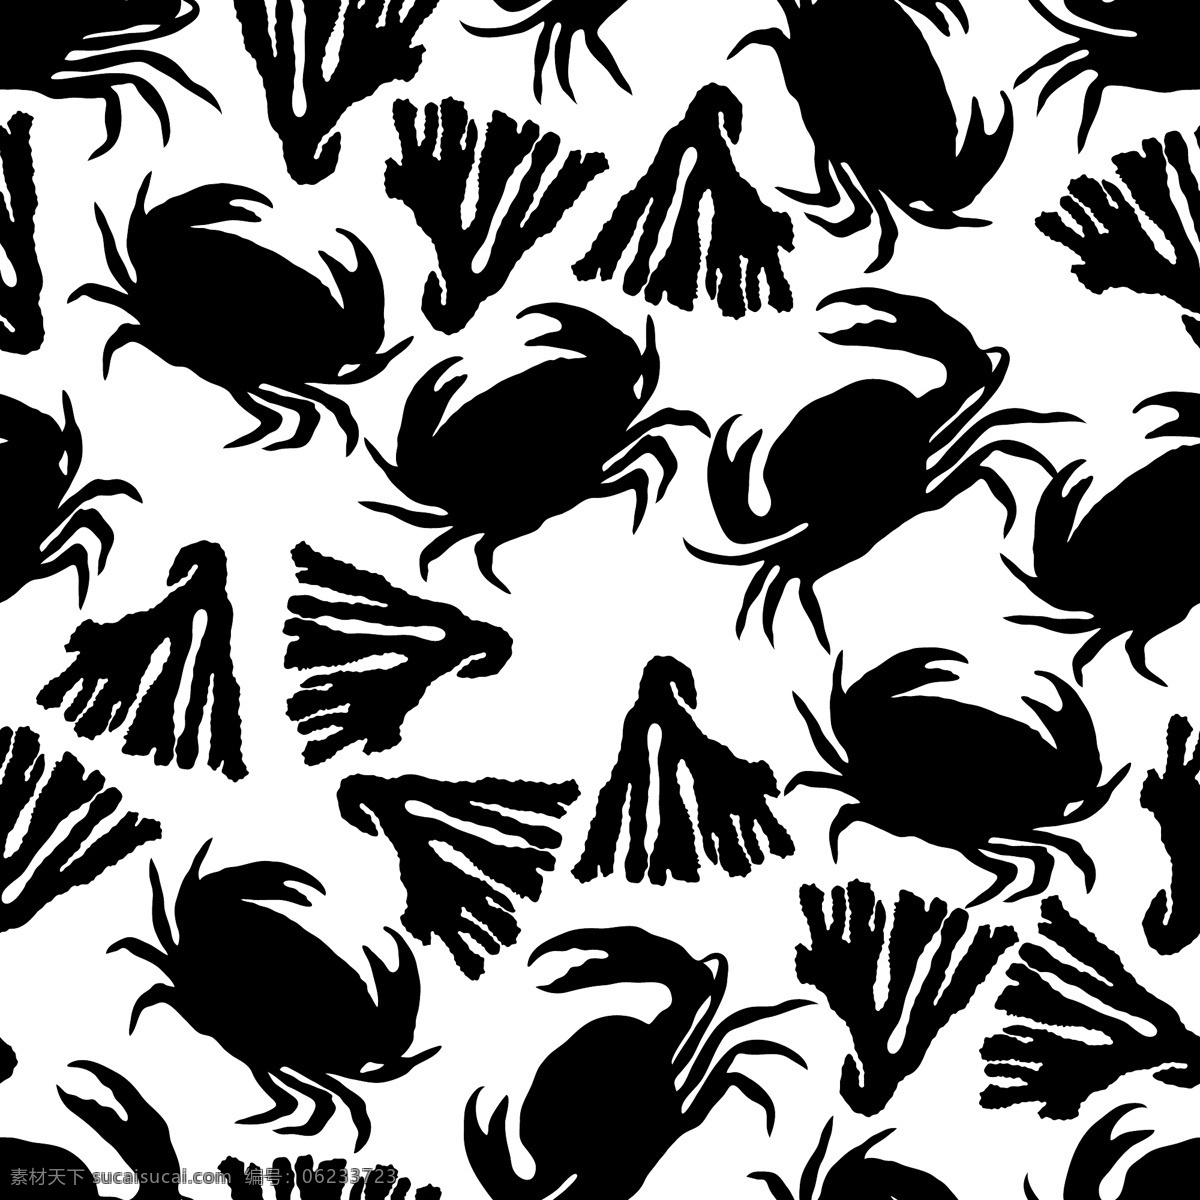 黑白 动物 水彩 diy 纹理 图案 条纹 卡通 花纹 矢量 设计素材 平面素材